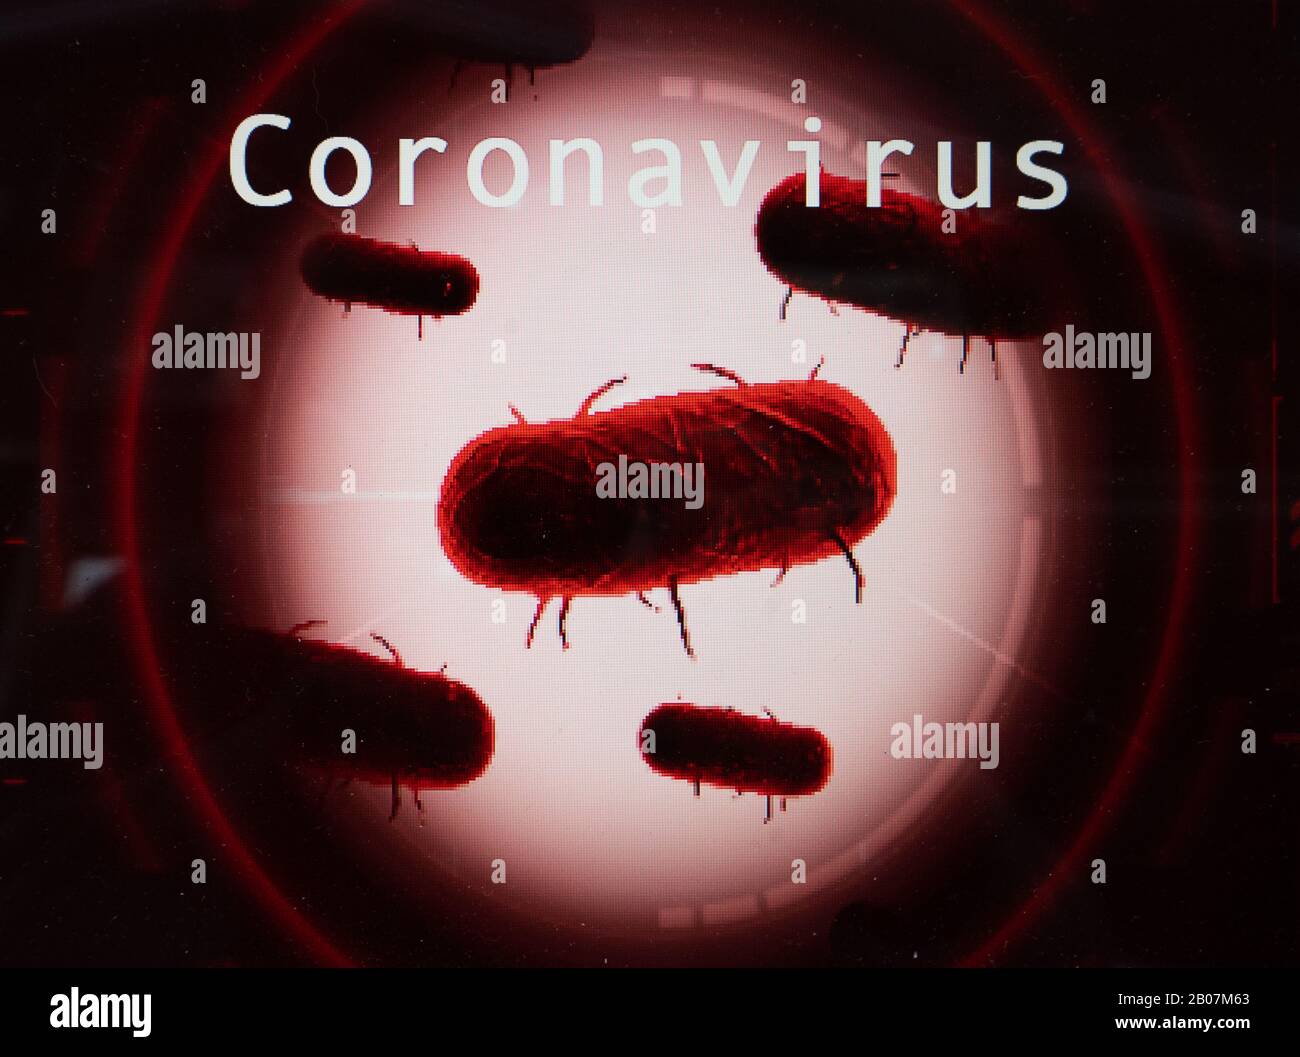 Células médicas, patógenos, Coronavirus a partir de China, una familia de virus que causan enfermedades que van desde el resfriado común hasta enfermedades más graves Foto de stock